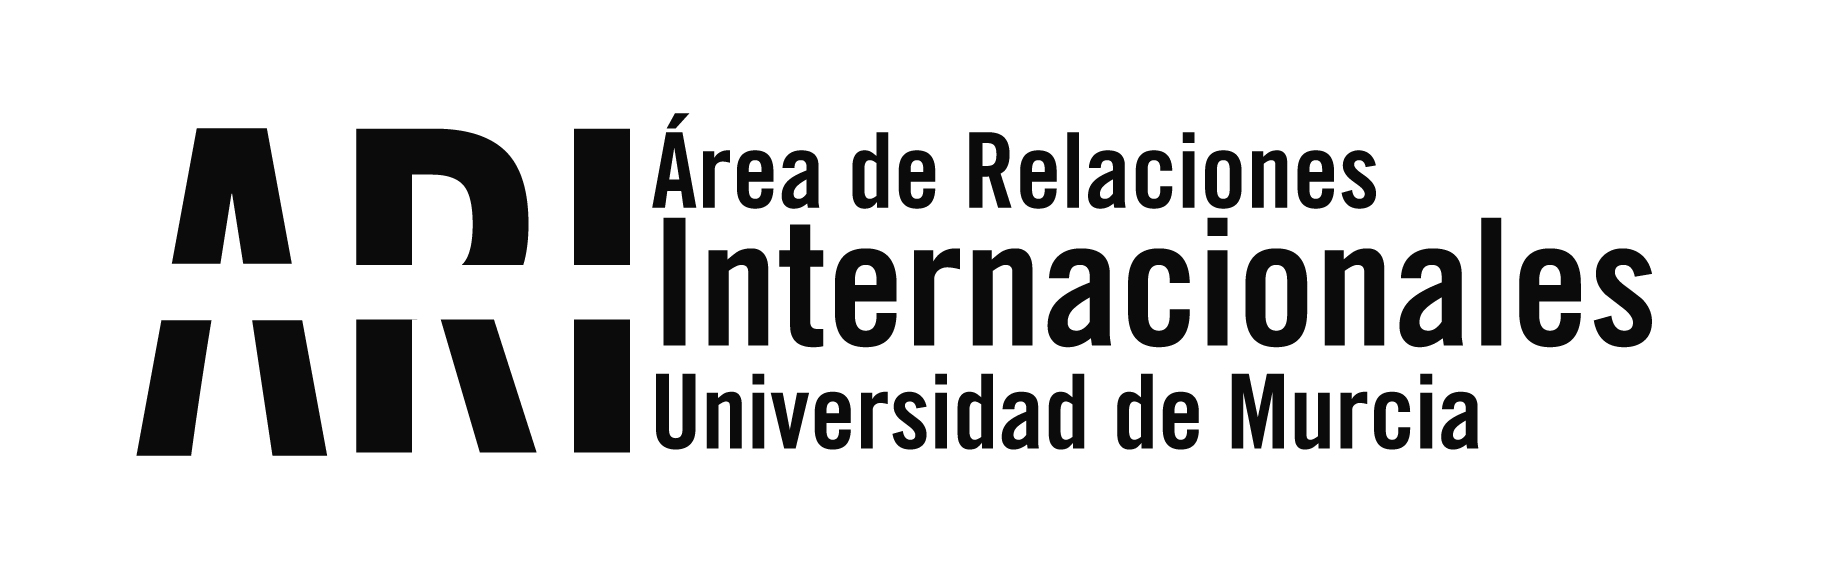 Estudiantes internacionales - Área de Relaciones Internacionales